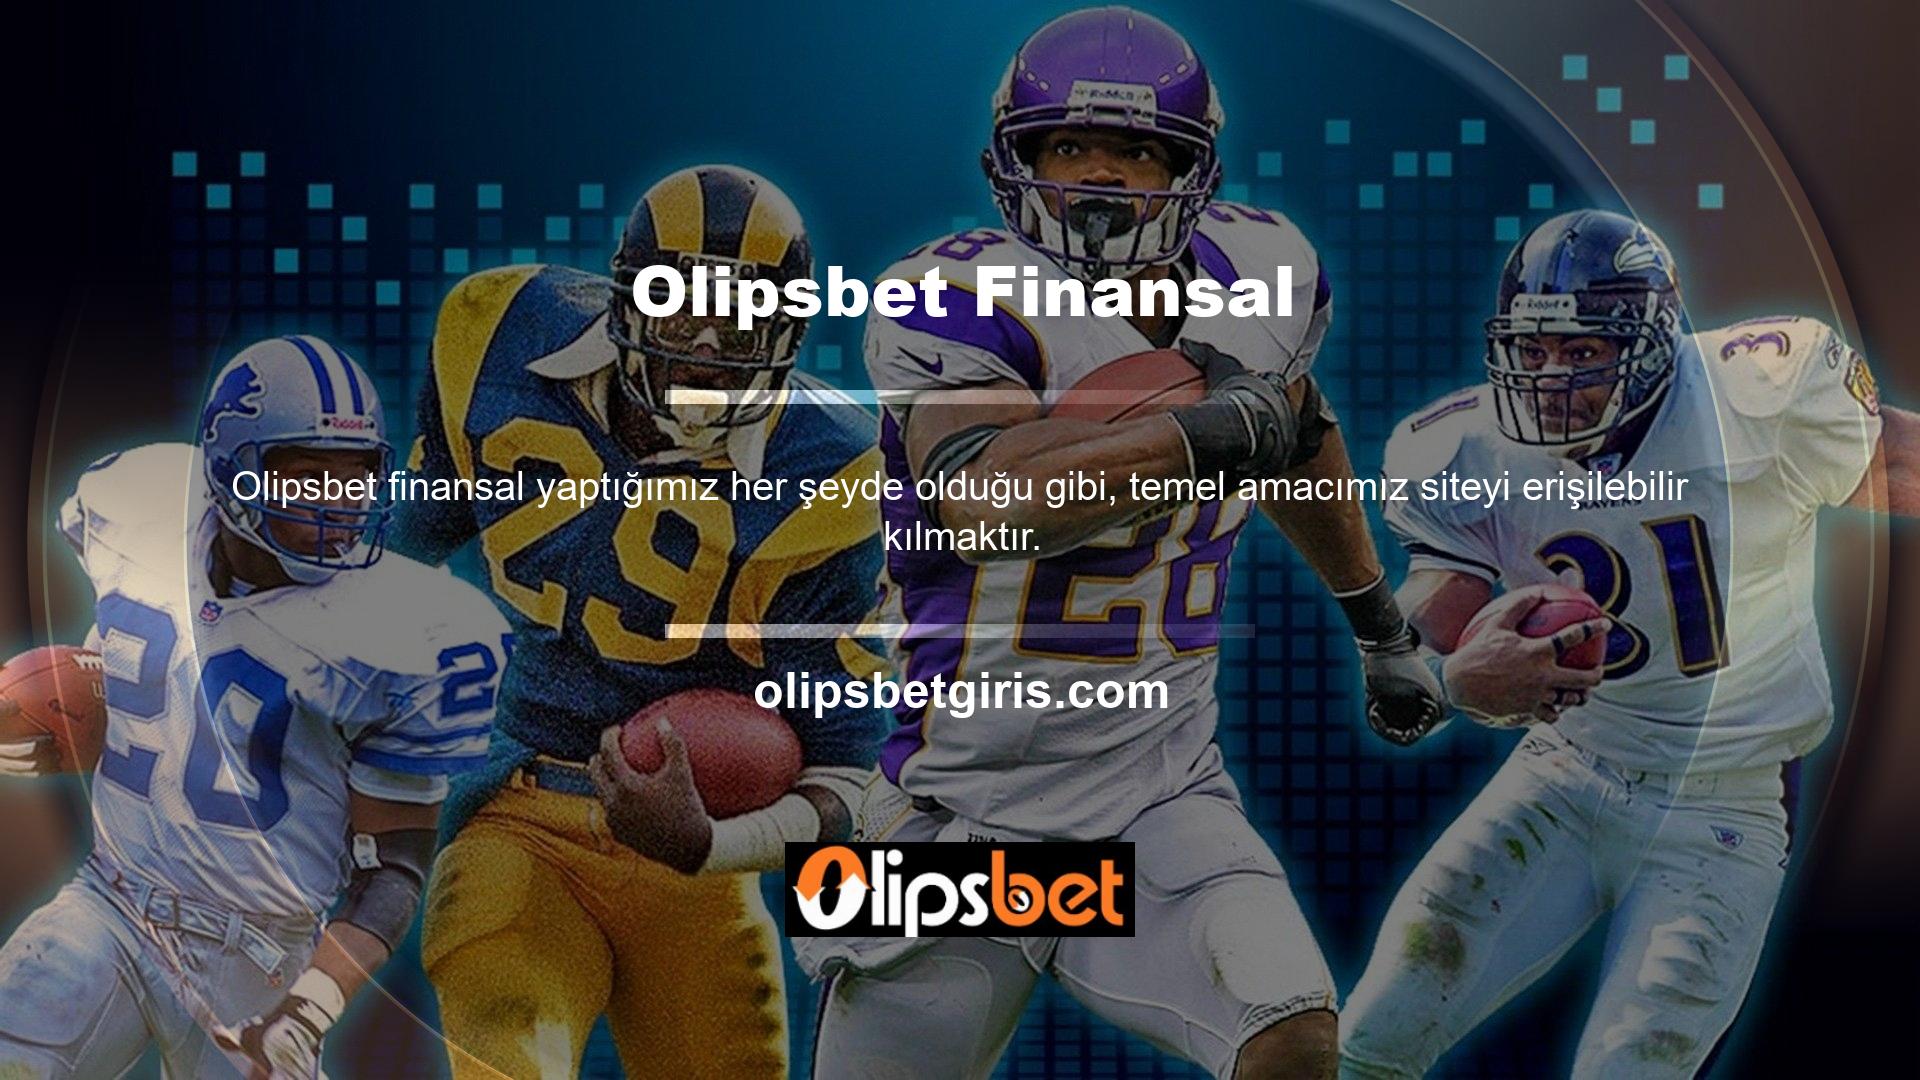 Yüksek limitli casino oyuncularının gözdesi olan Olipsbet Casino sitesi, VIP Casino Olipsbet Finansal Durum Sitesi olarak anılmakta ve büyümeye devam etmektedir